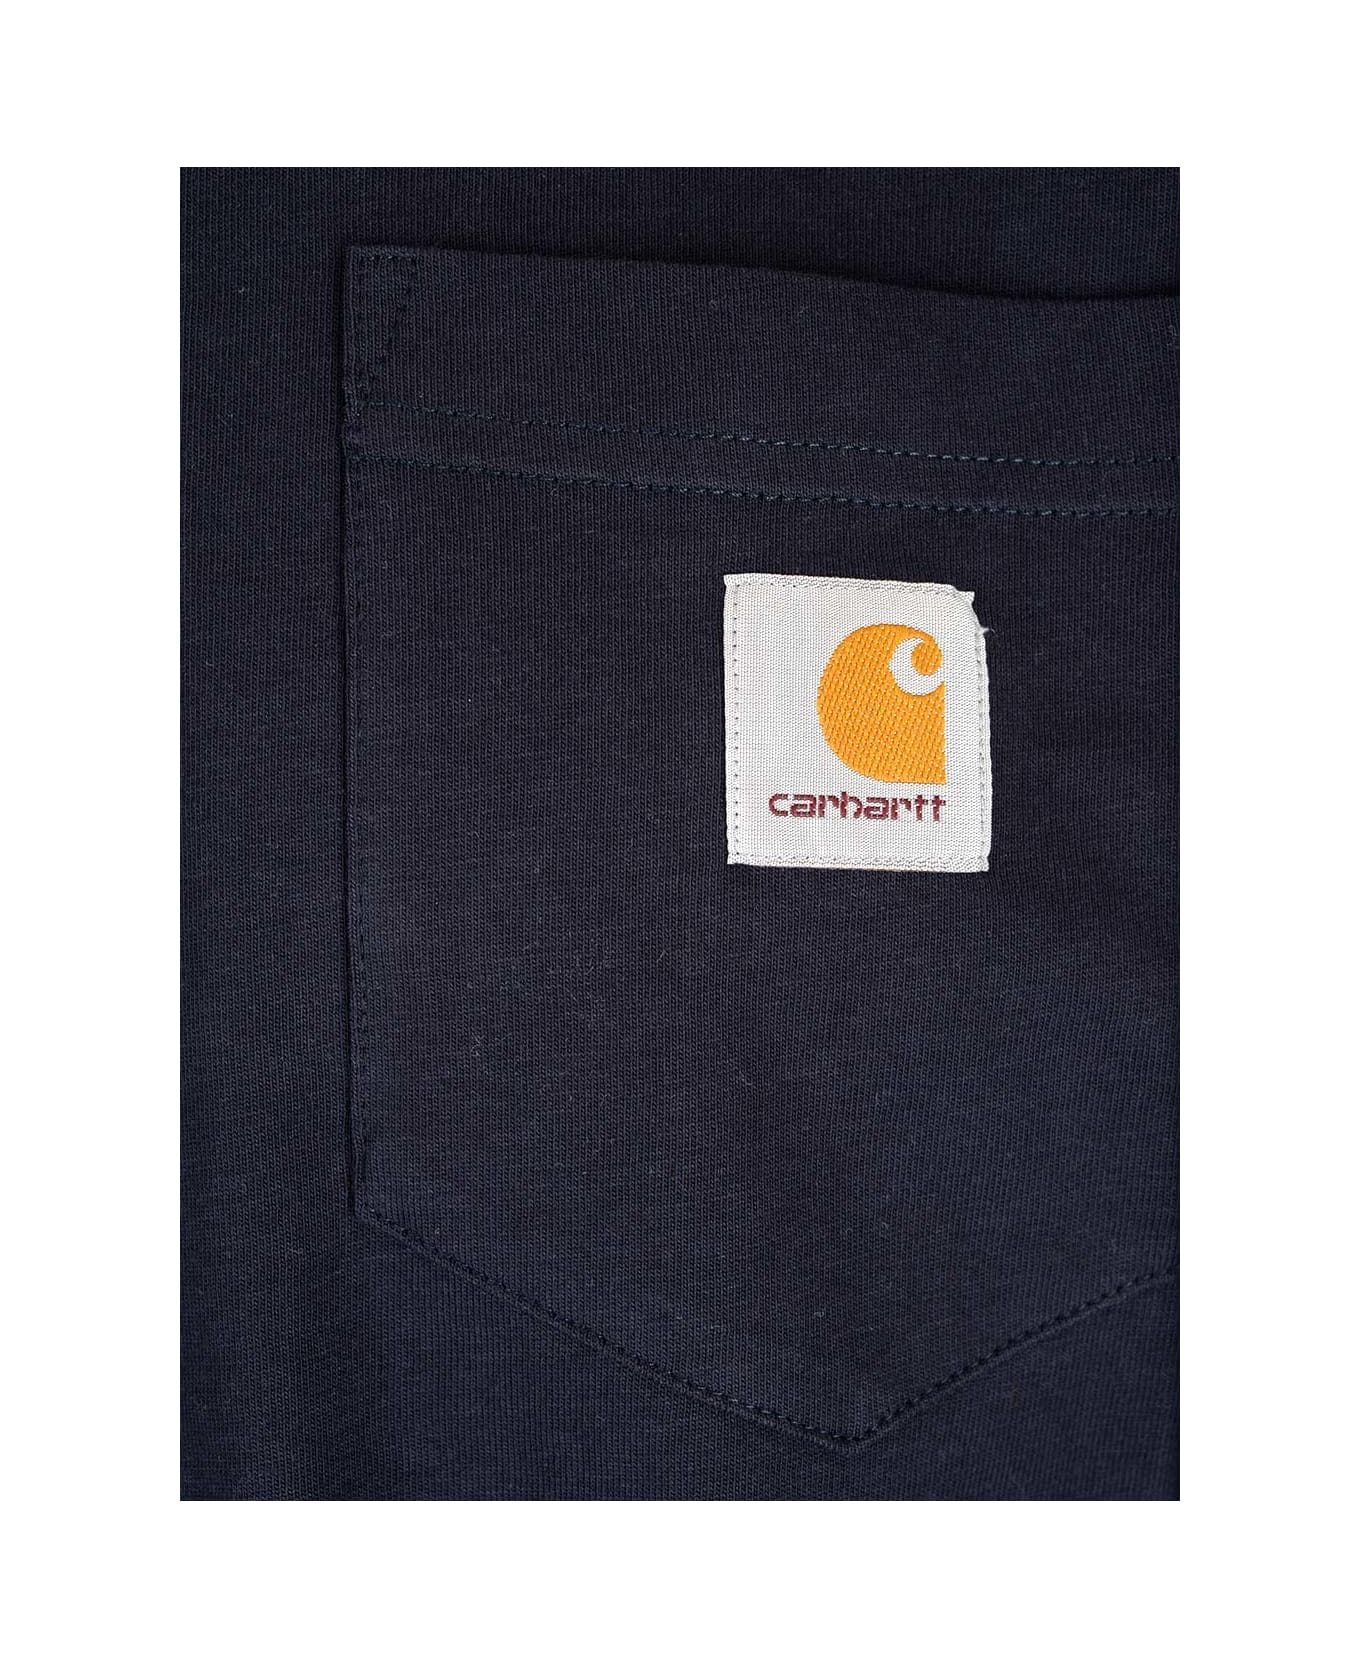 Carhartt Chest Pocket T-shirt - Blu navy